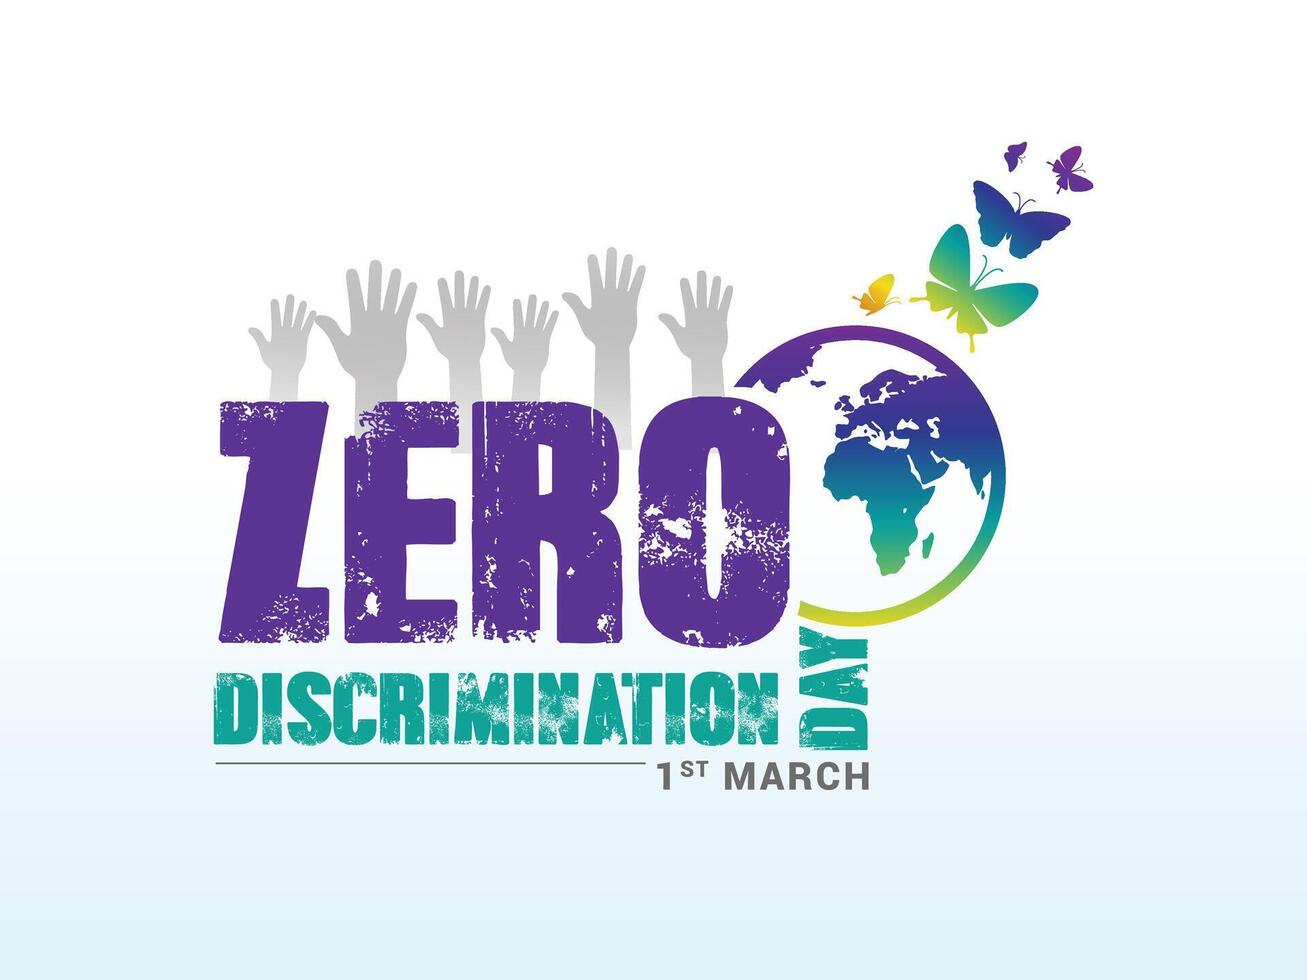 cero discriminación día 1 marzo. vector gráfico de cero discriminación día bueno para cero discriminación día celebracion, nosotros celebrar el Derecha de todos a En Vivo un lleno y productivo vida